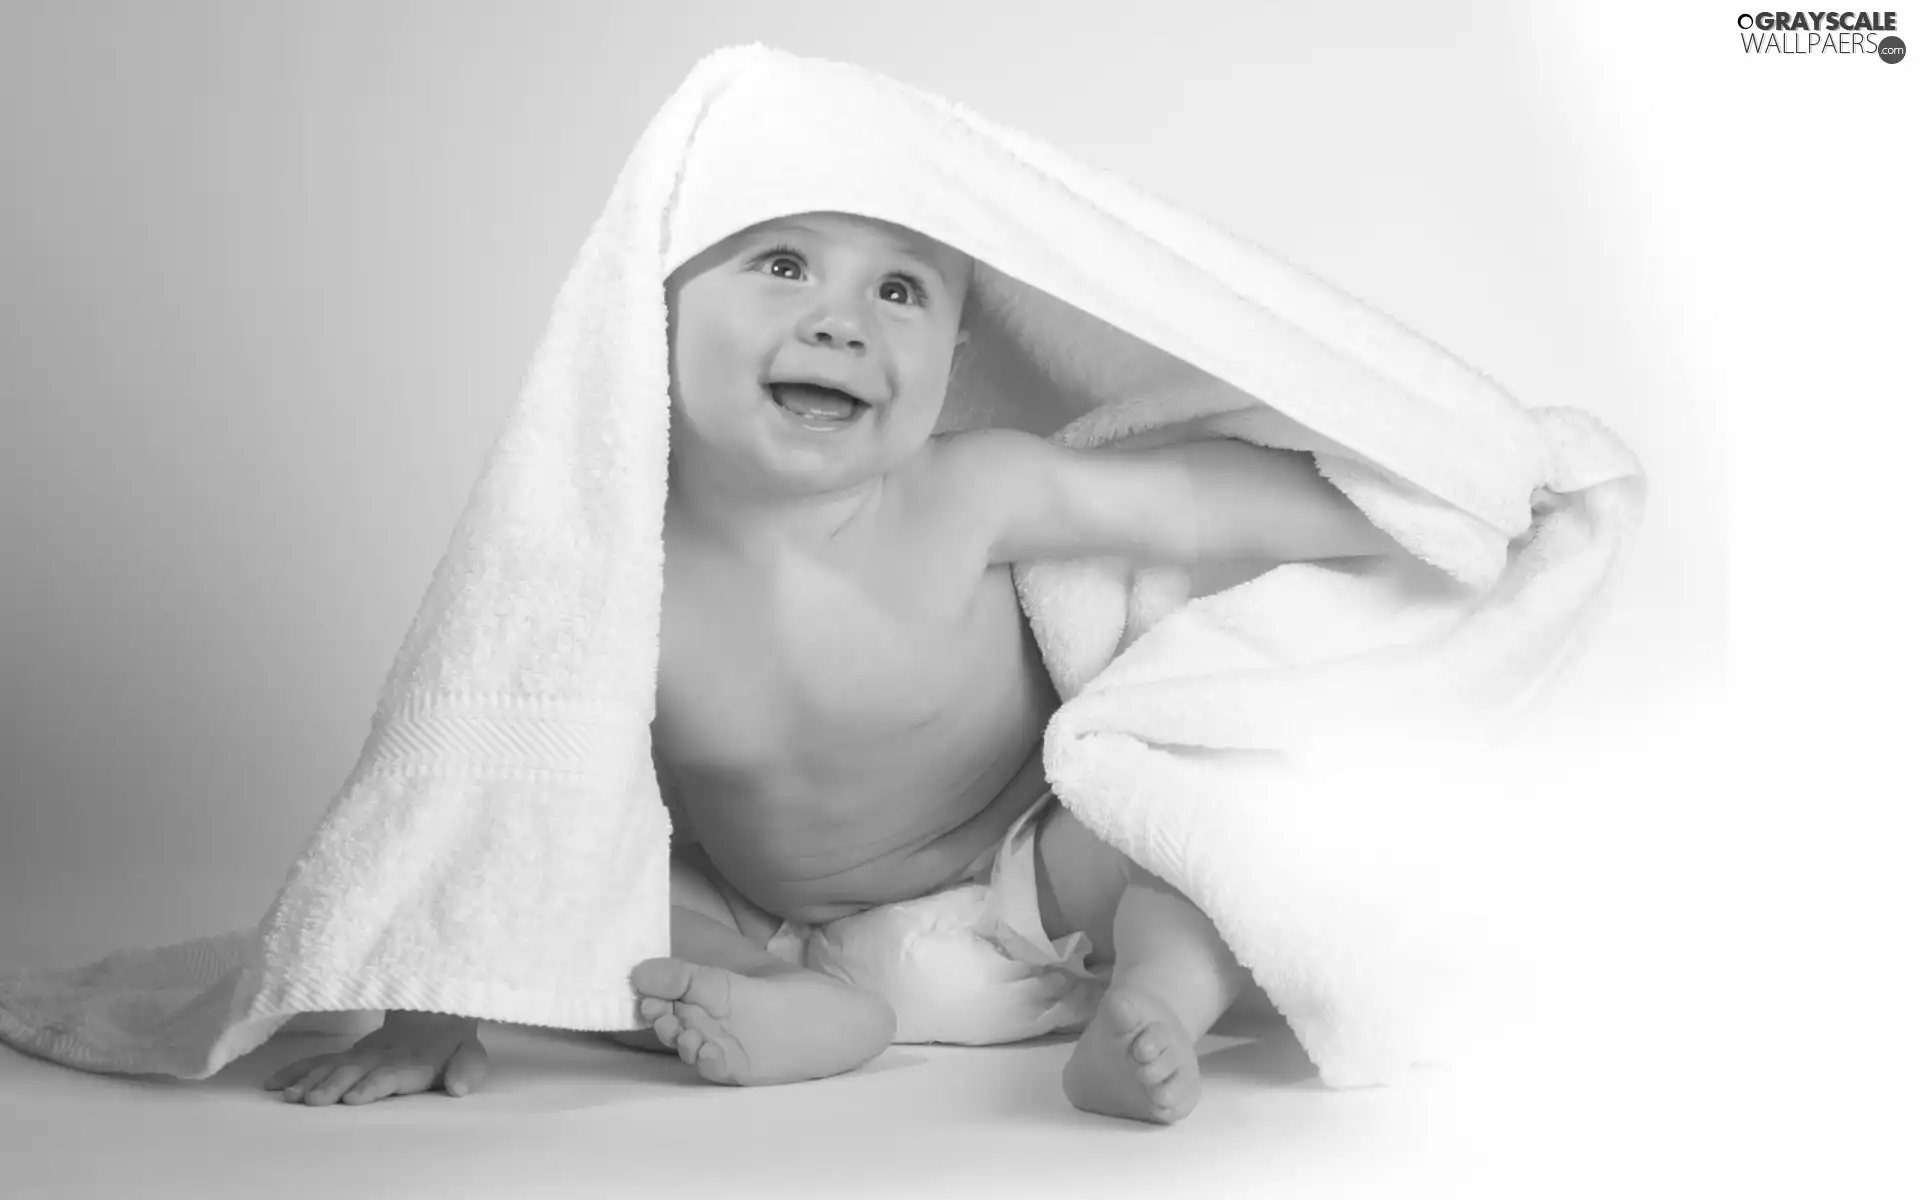 Towel, laughing, Kid